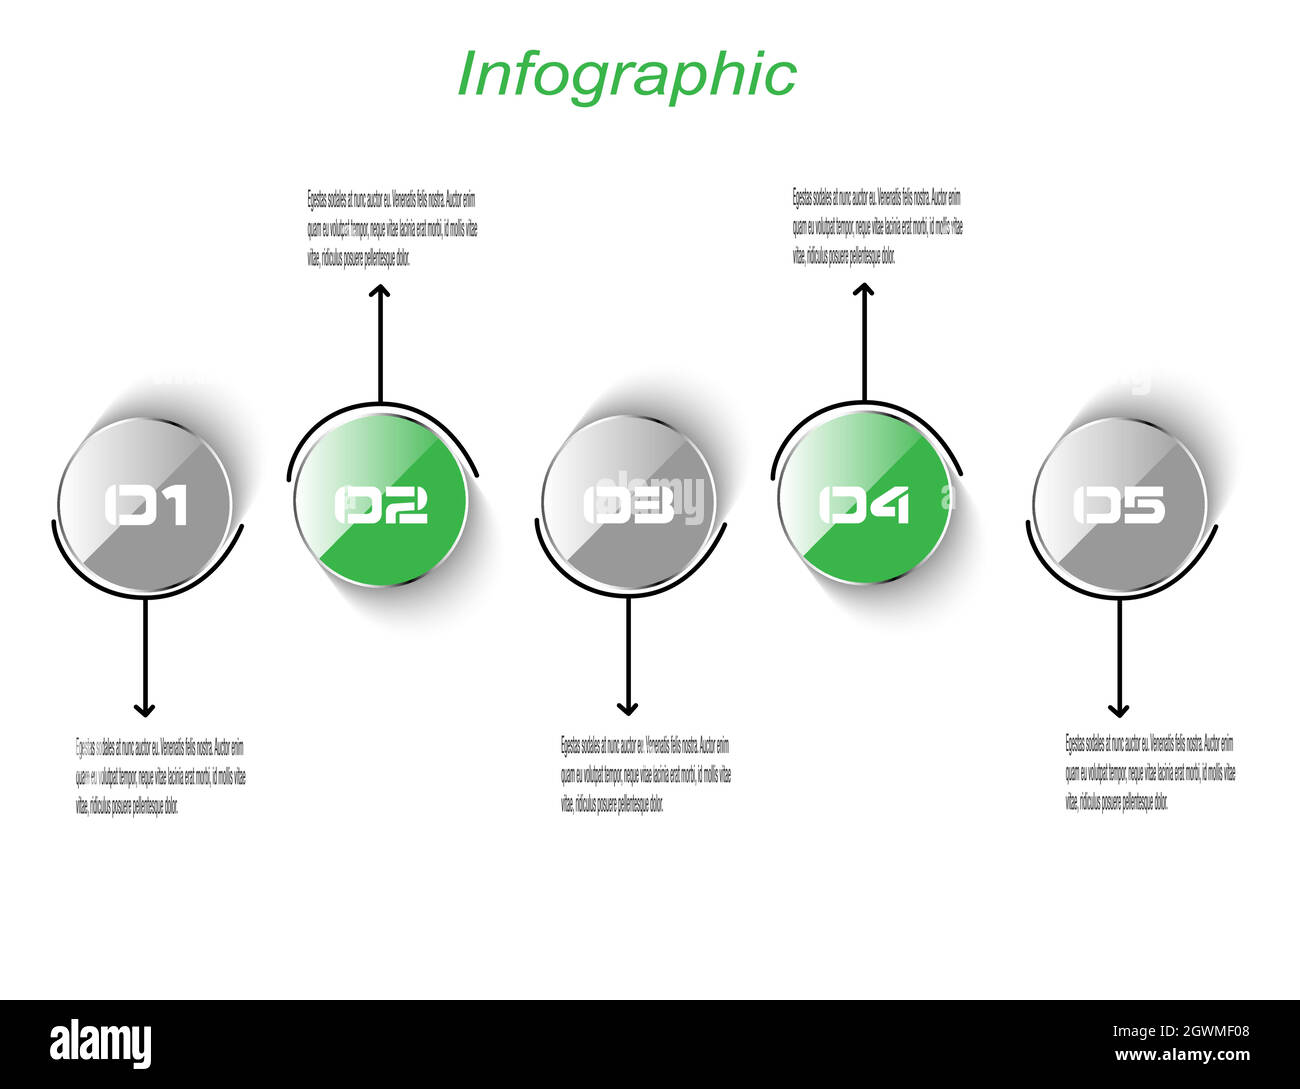 Modèle d'affichage de l'infographie. Idée d'afficher les informations, le classement et les statistiques. Illustration de Vecteur